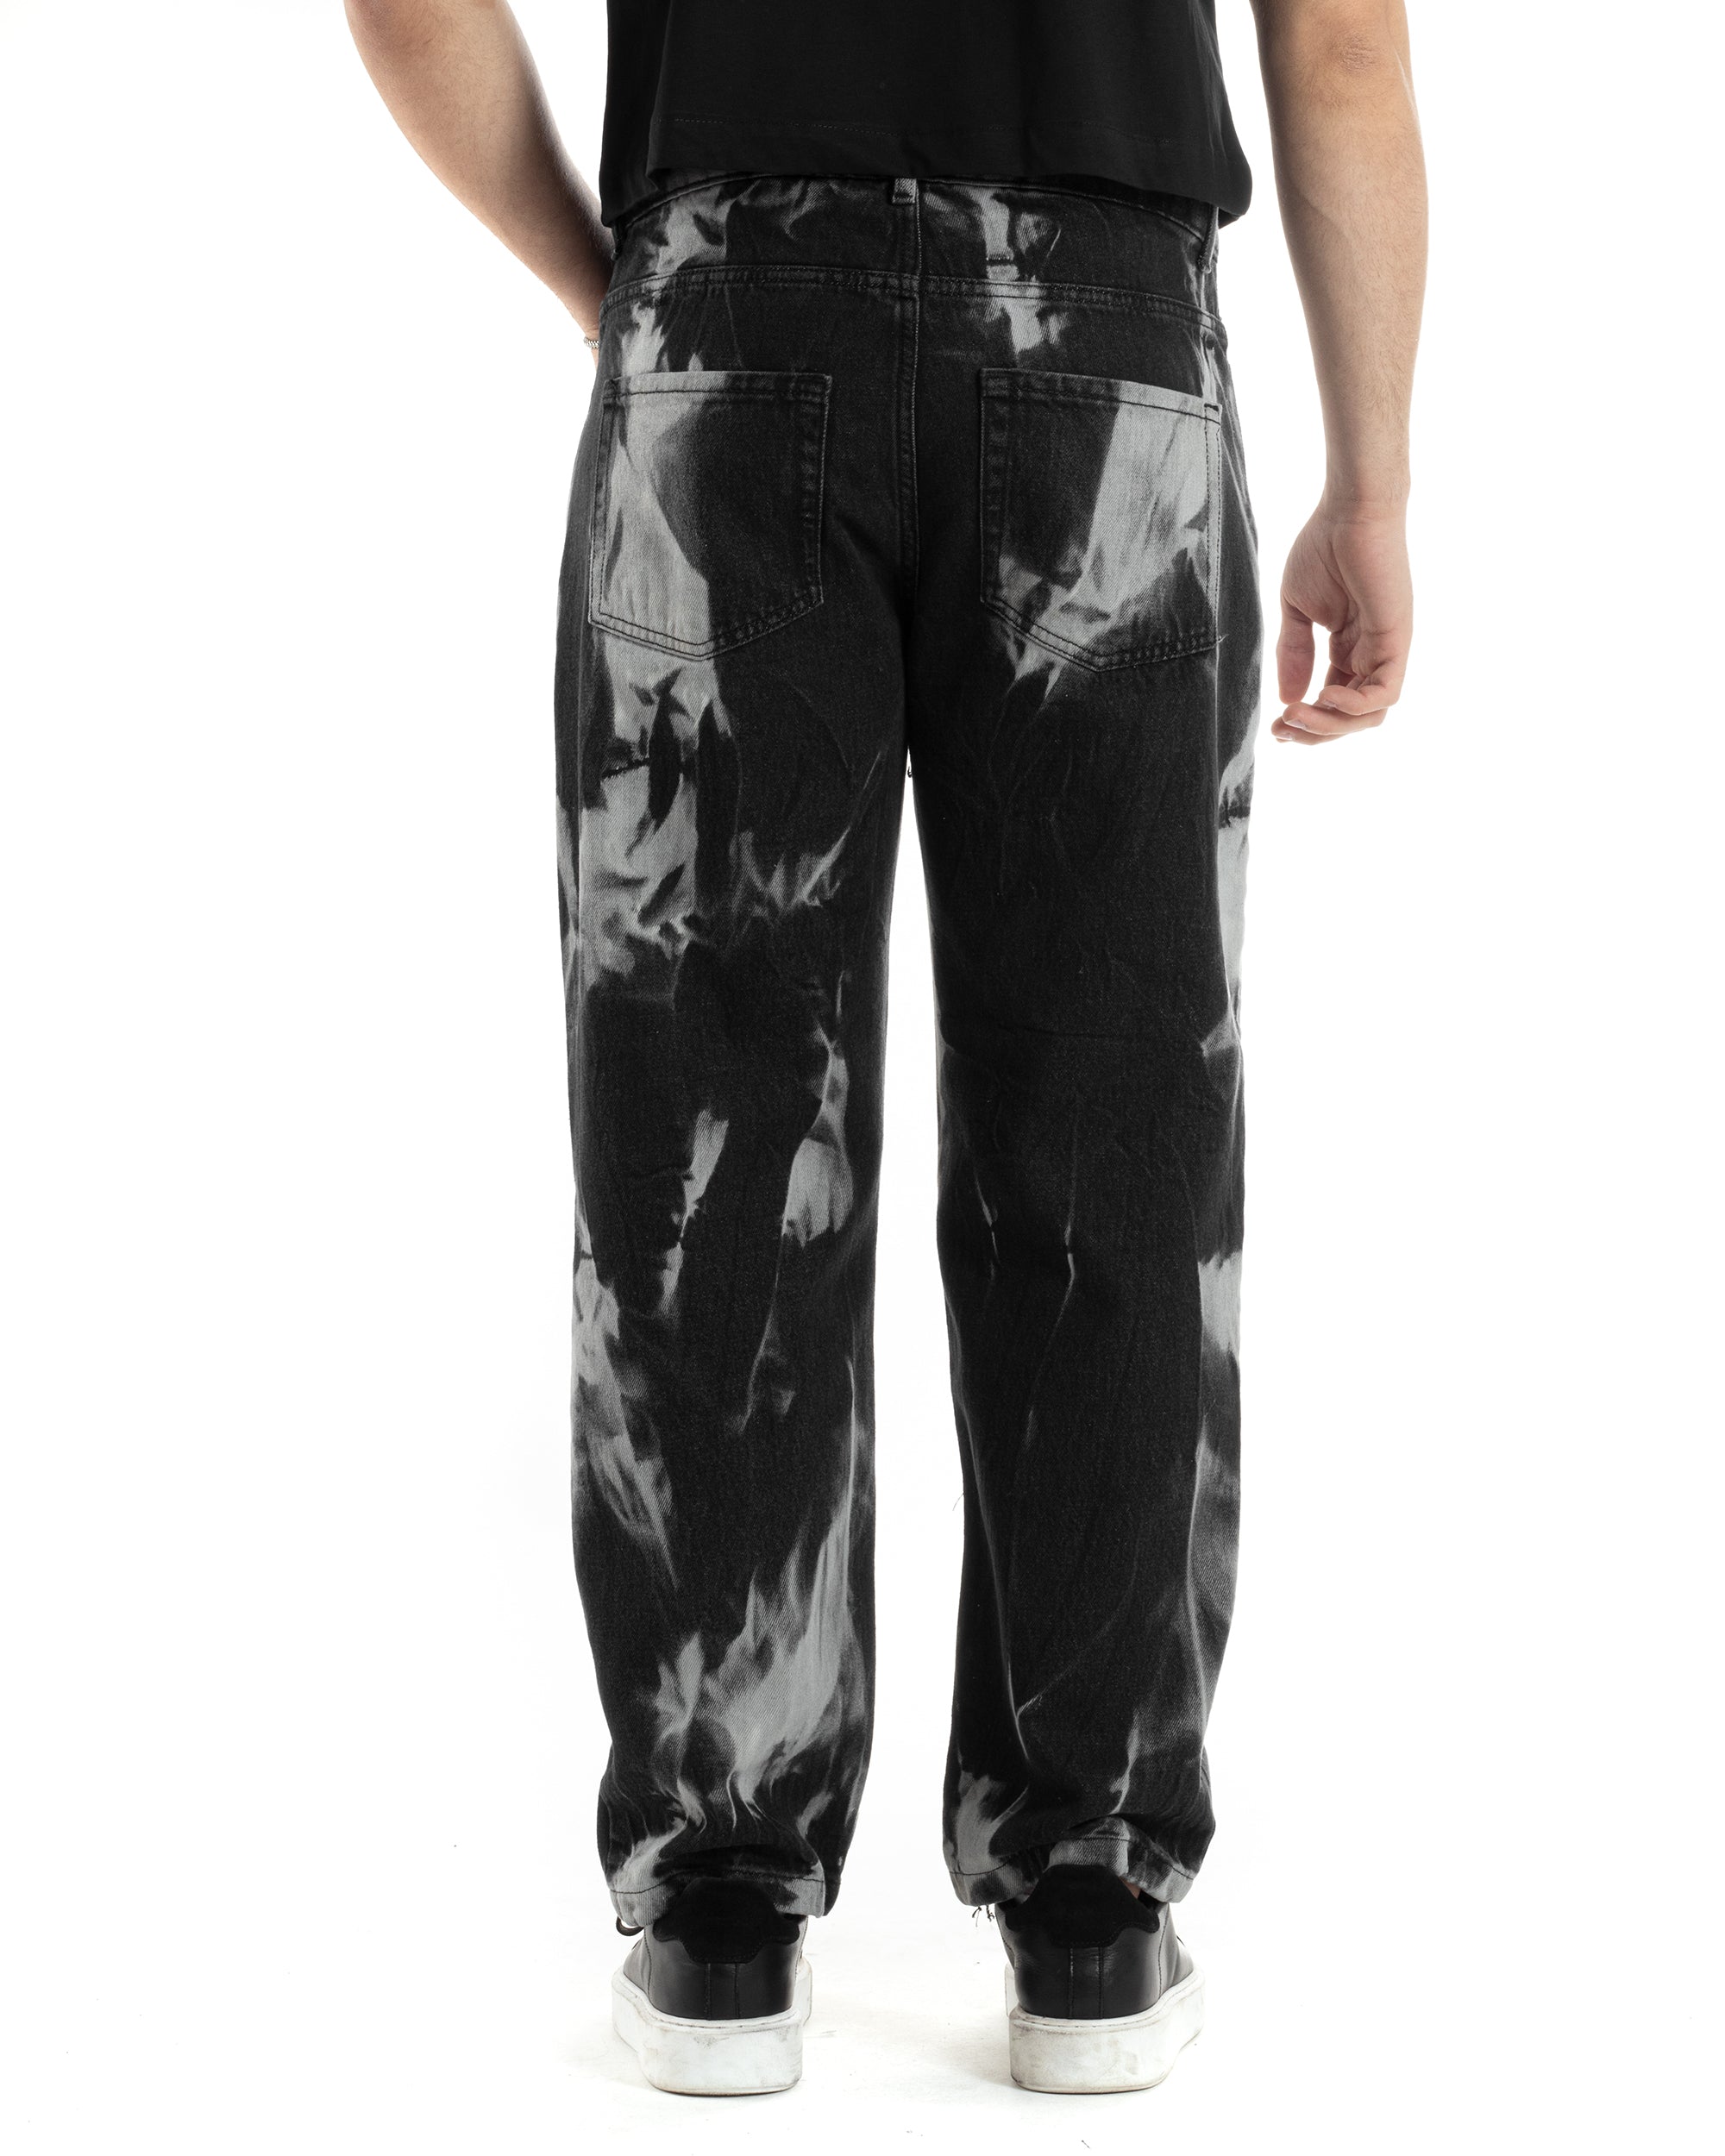 Pantaloni Jeans Uomo Baggy Fit Basic Nero Sfumato Tie-Dye GIOSAL-JS1013A